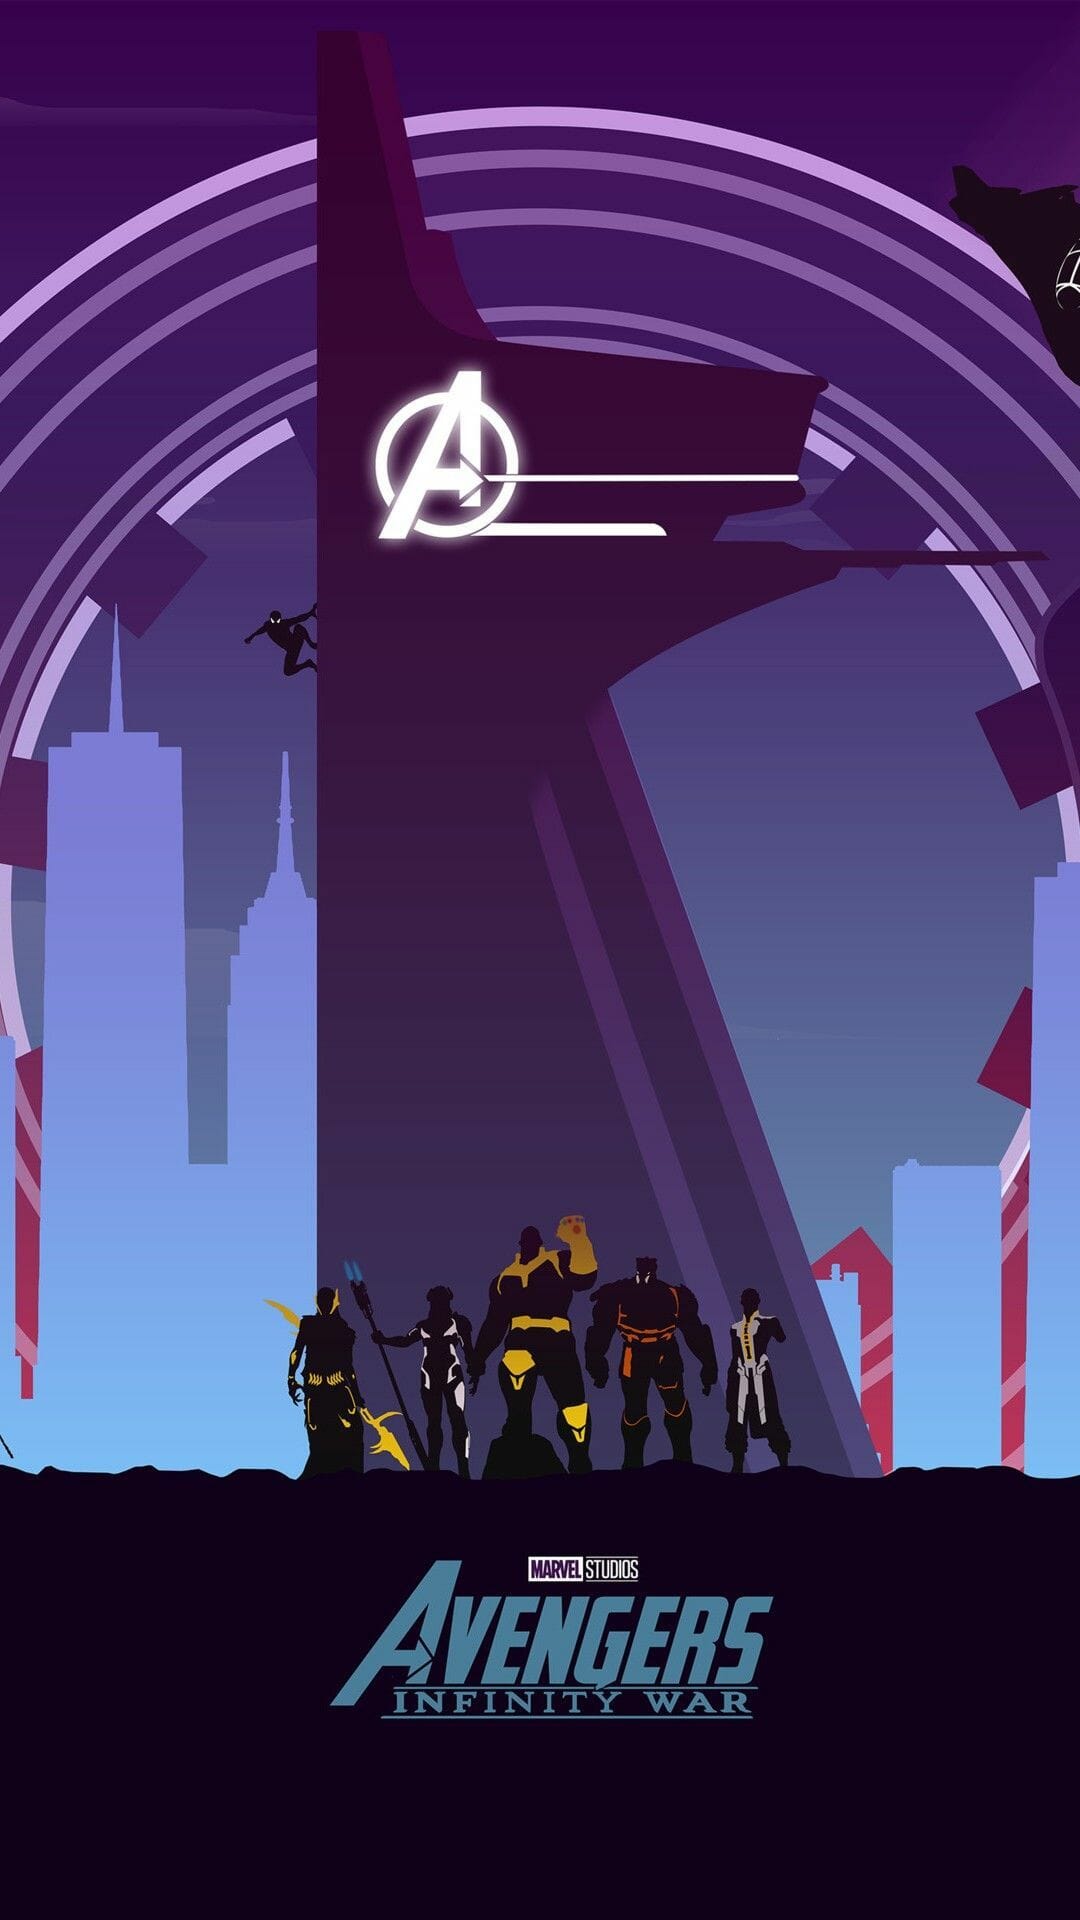 Avengers infinity war wallpaper - Avengers, Marvel